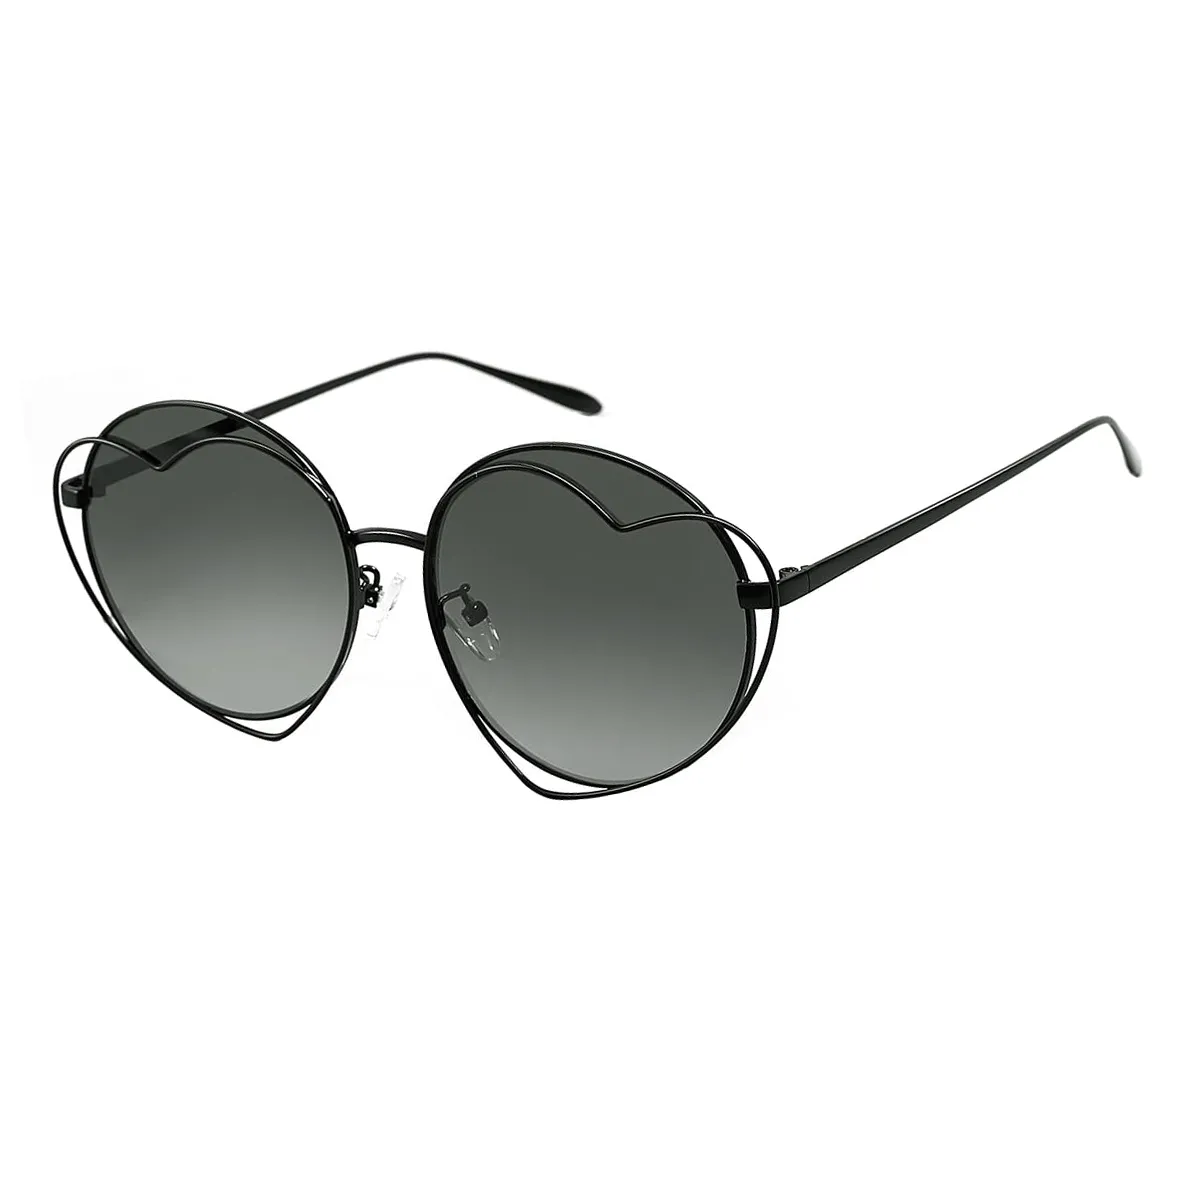 Myra - Round Black Sunglasses for Women